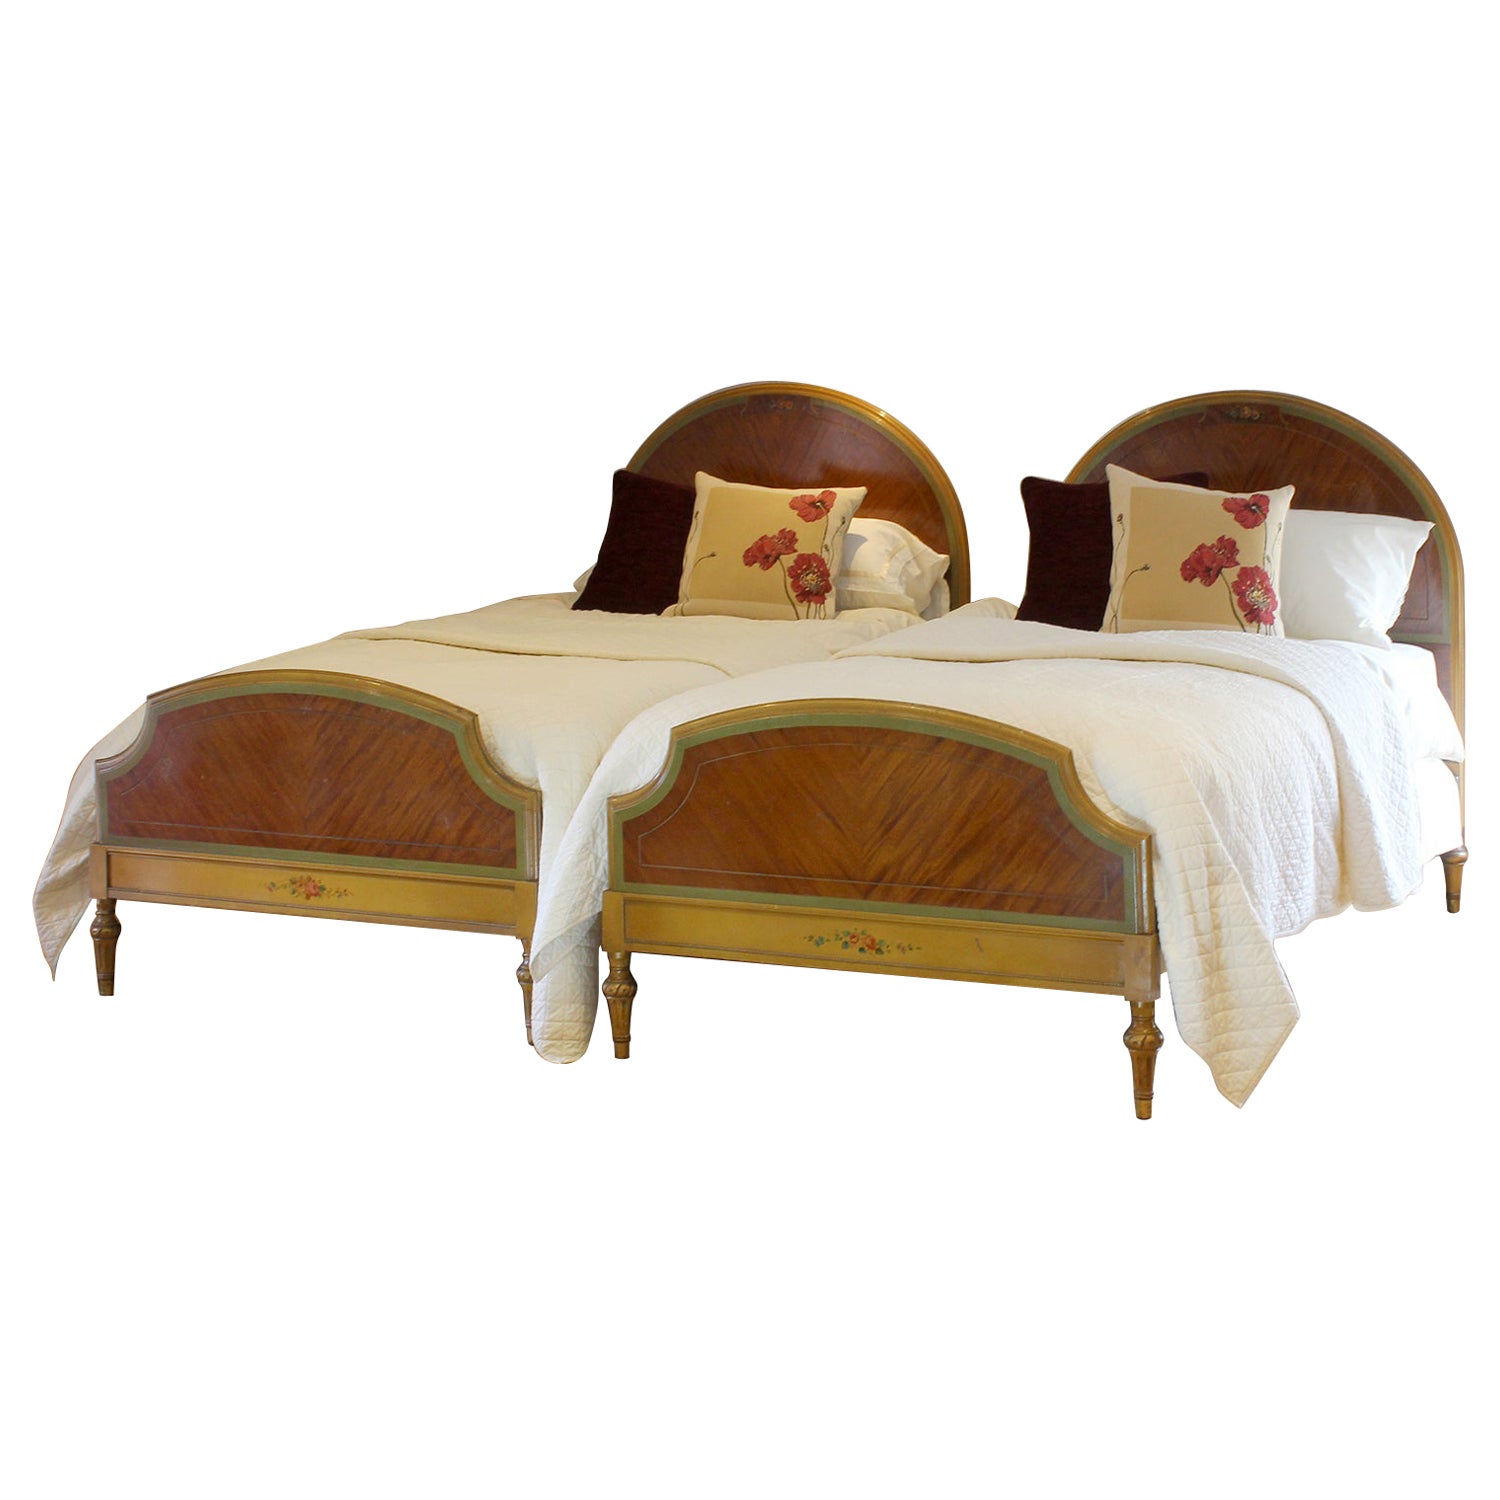 Matching Pair of Painted Mahogany Beds, WP45